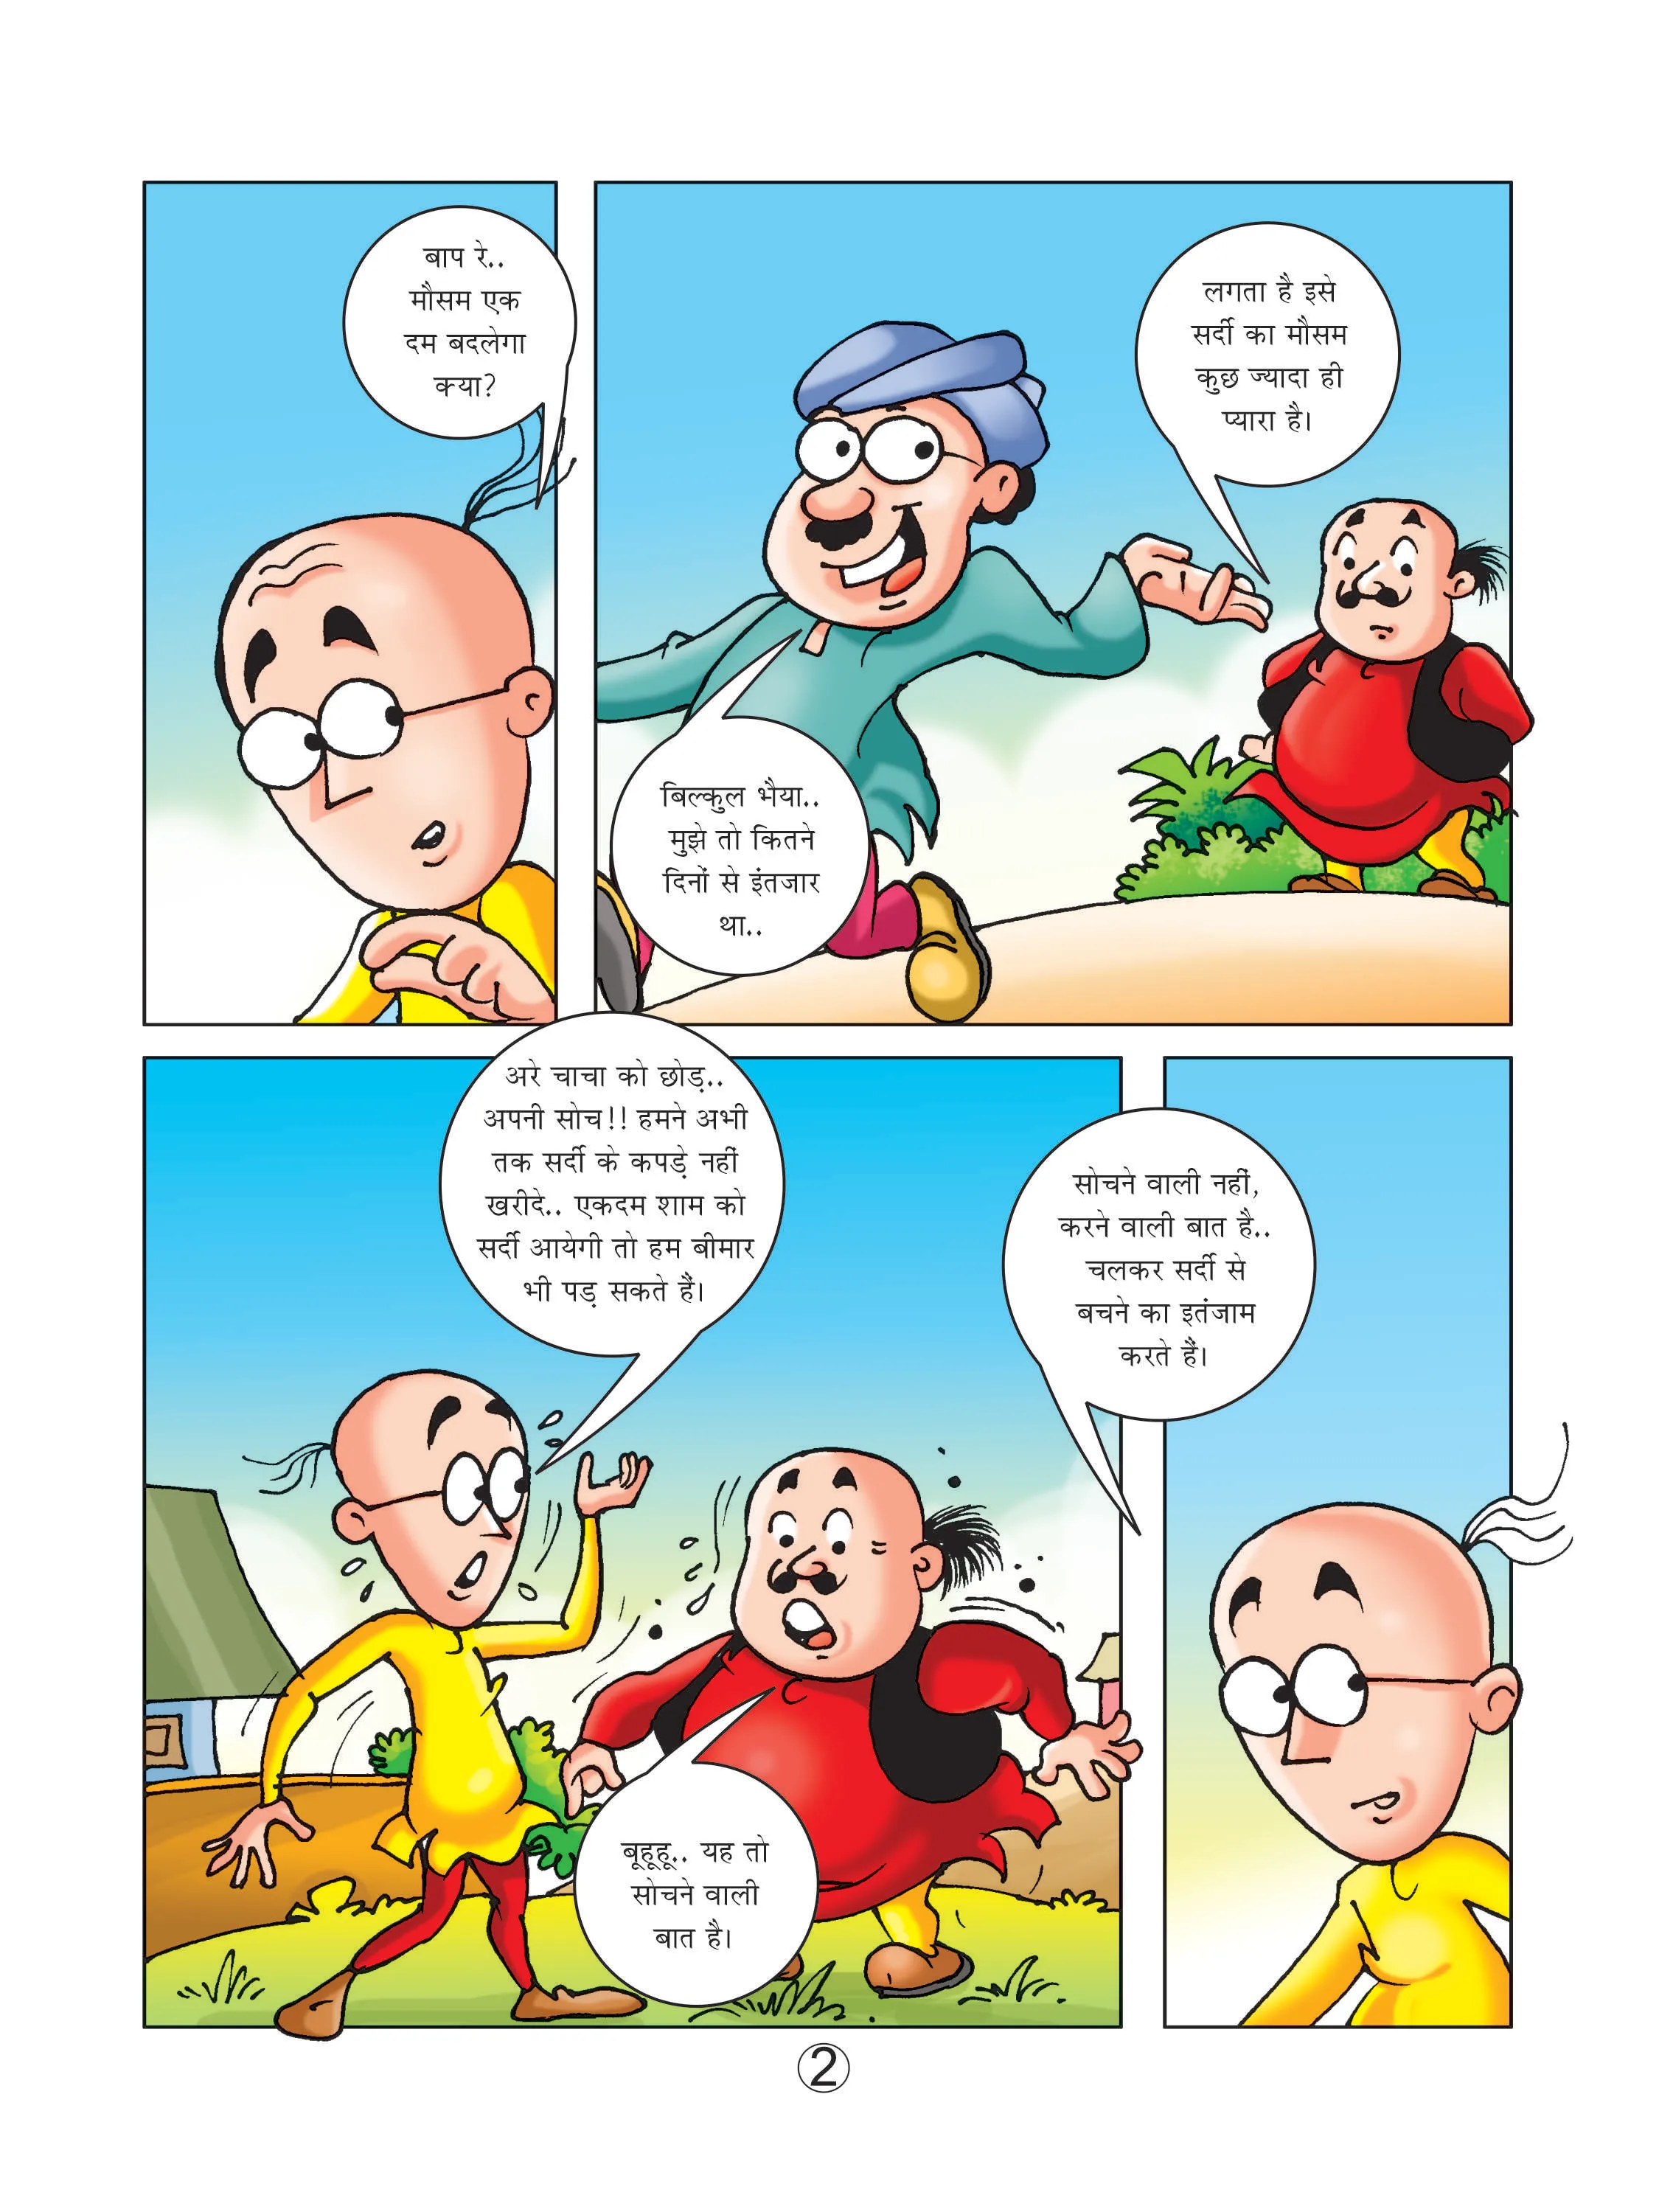 Lotpot cartoon character Motu patlu comics